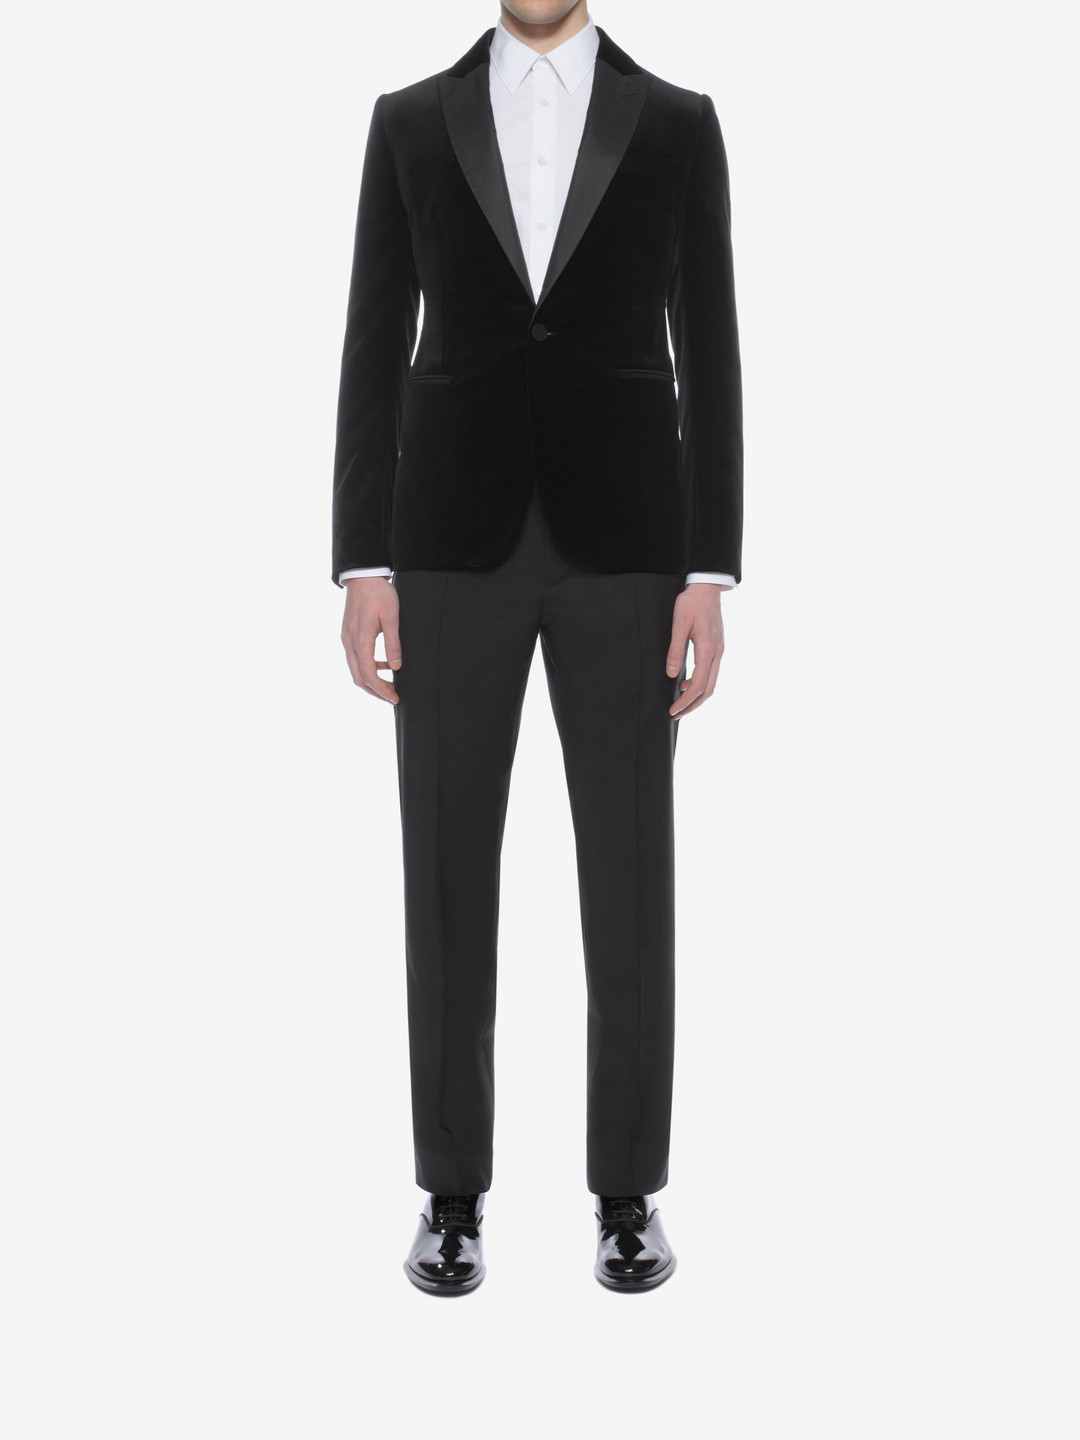 Alexander McQueen Velvet Tuxedo Jacket in Black for Men - Lyst